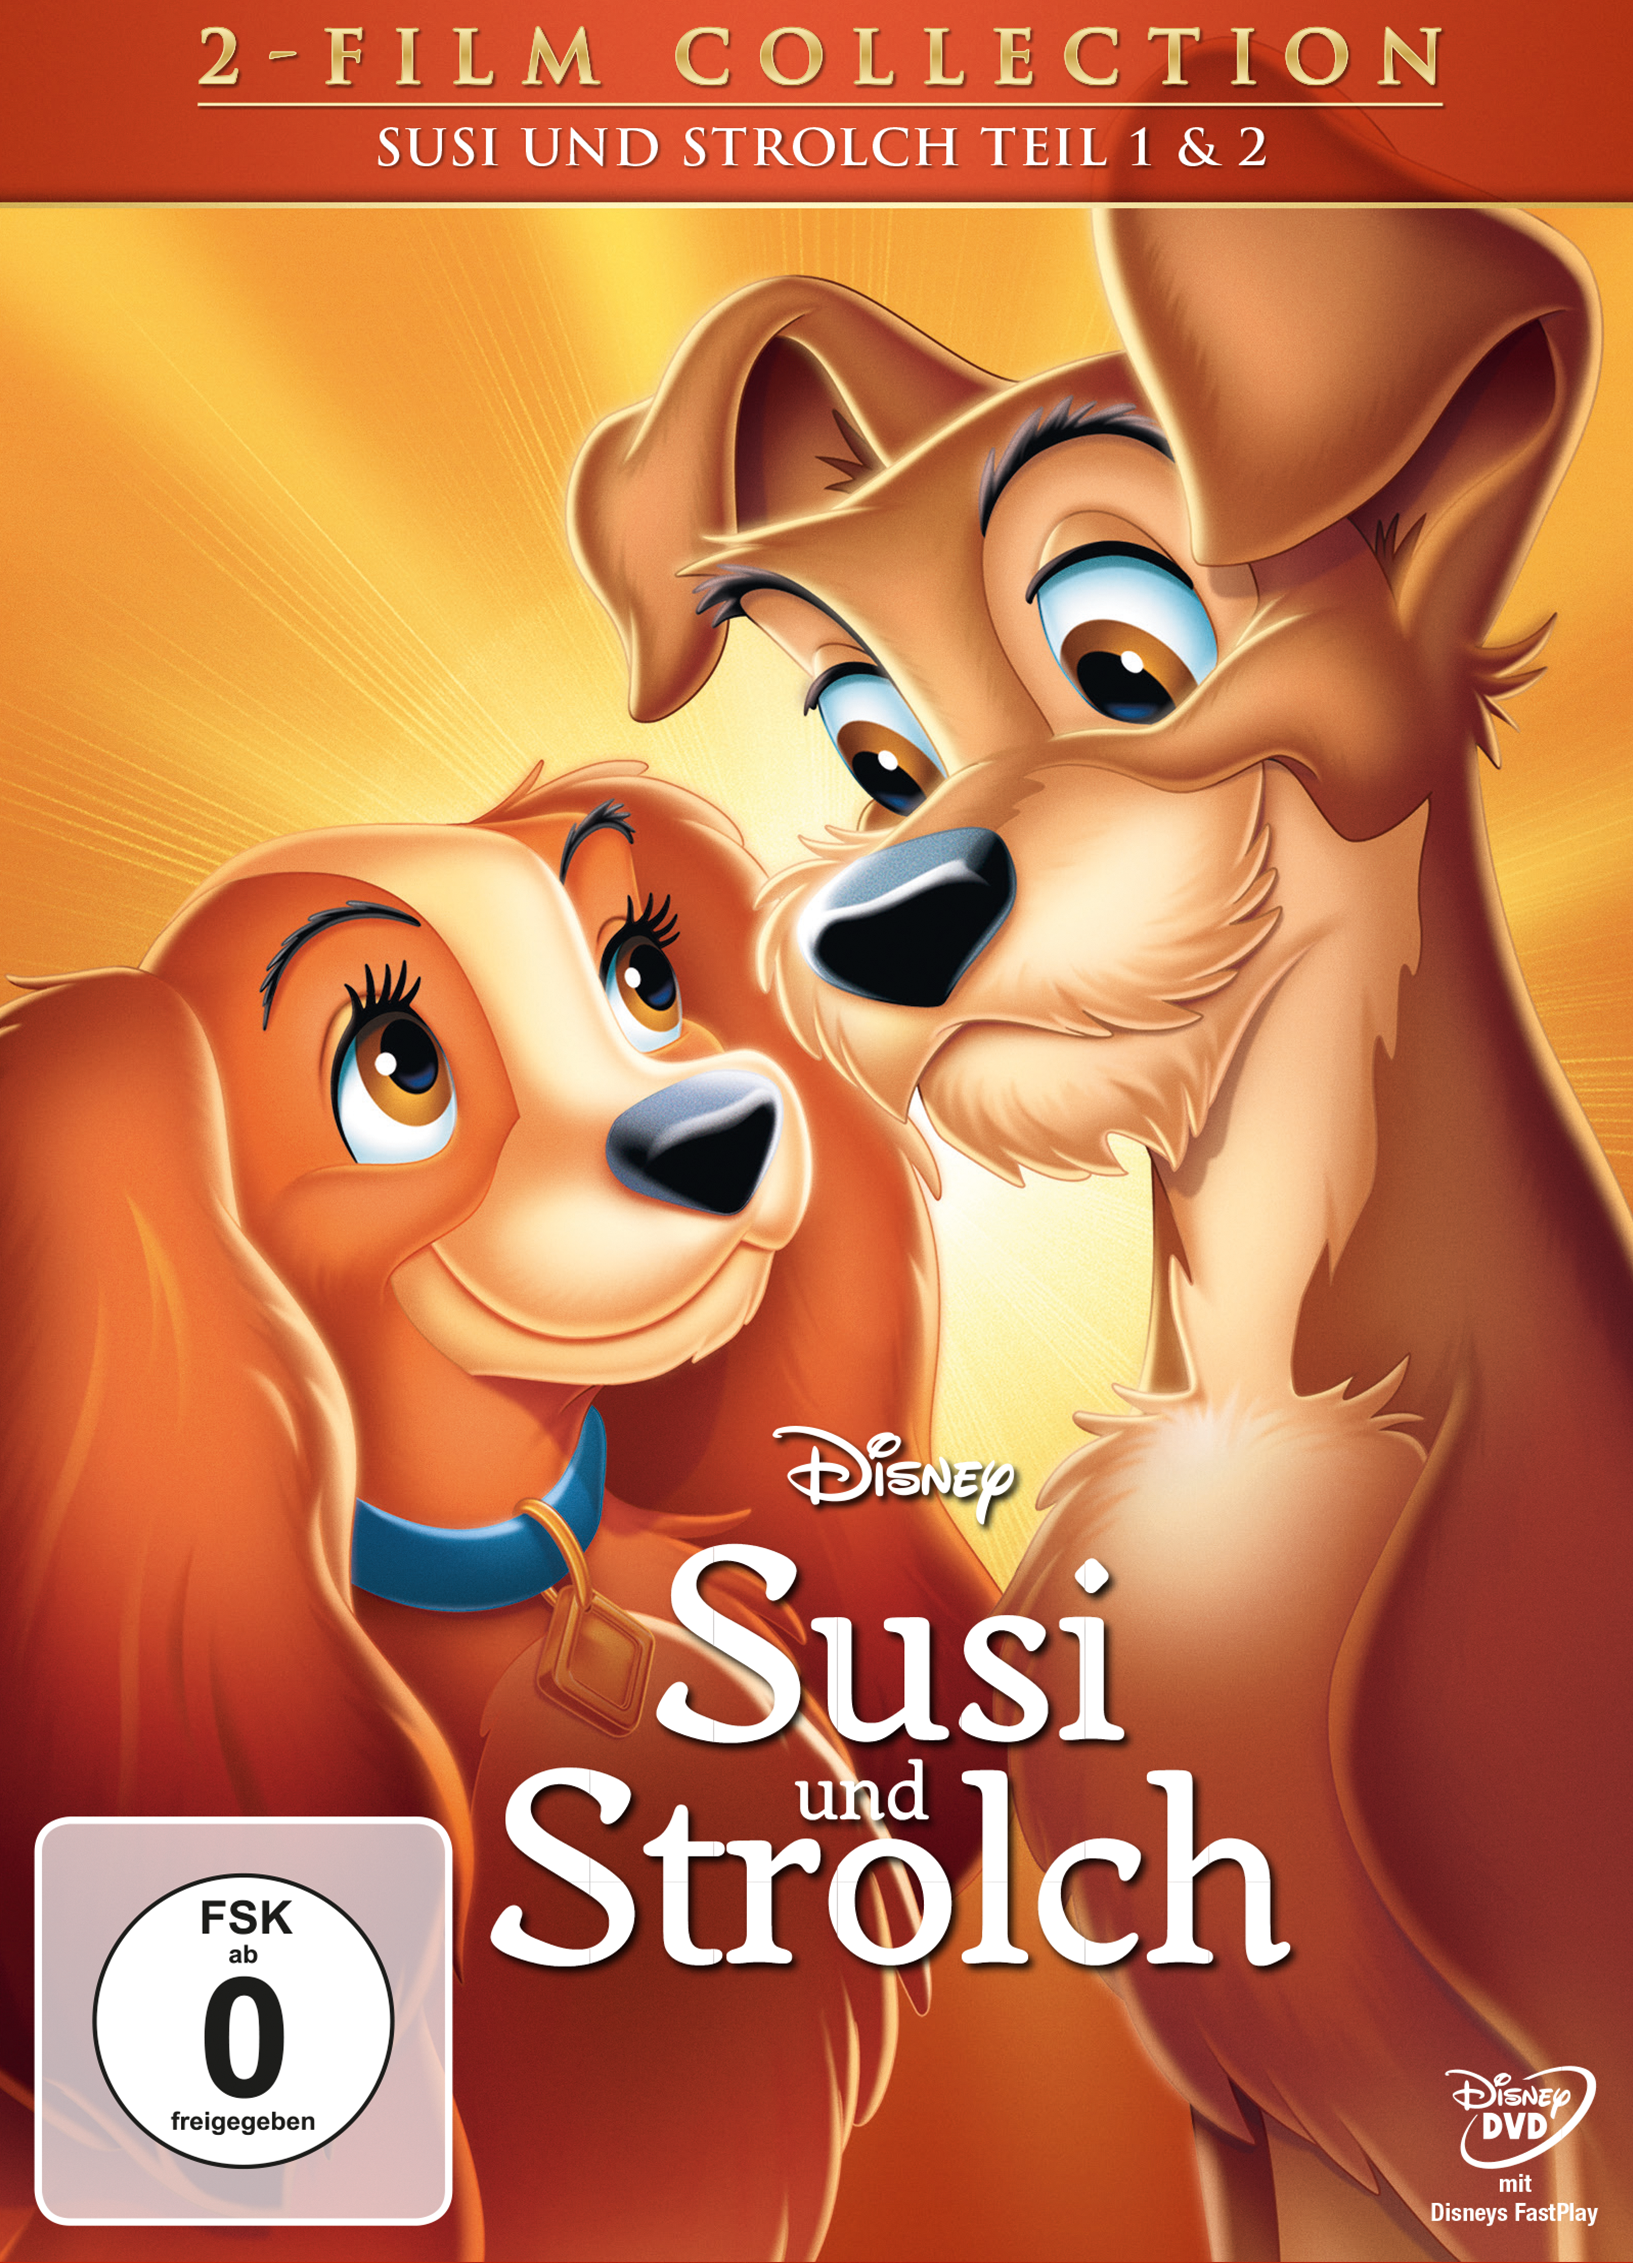 Susi und Susi + Strolch DVD Diamond - und Edition Strolch II